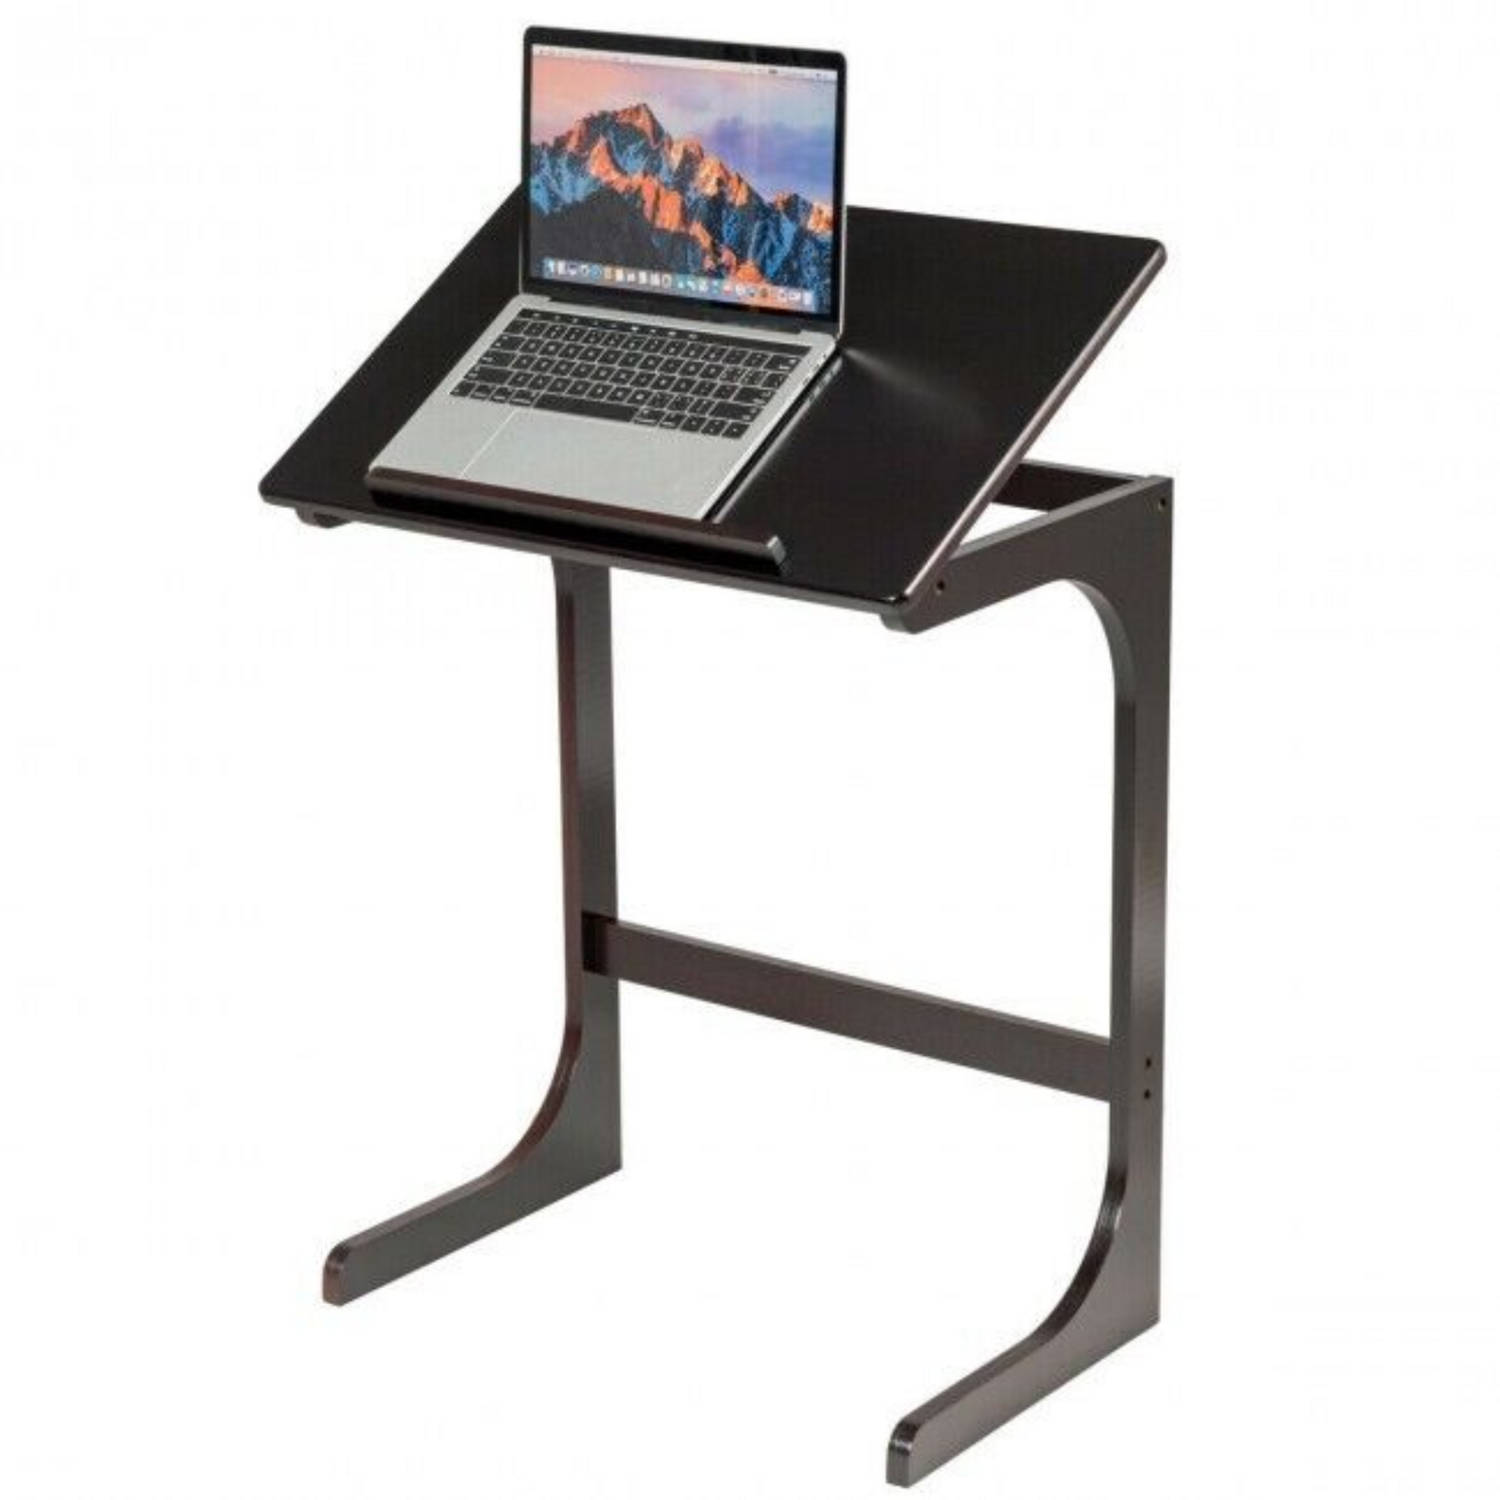 Zenzee Bijzettafel Laptoptafel Laptopstandaard Eettafel Klapbaar Voor Bank Of Bed B60 X H70 X D40 Cm